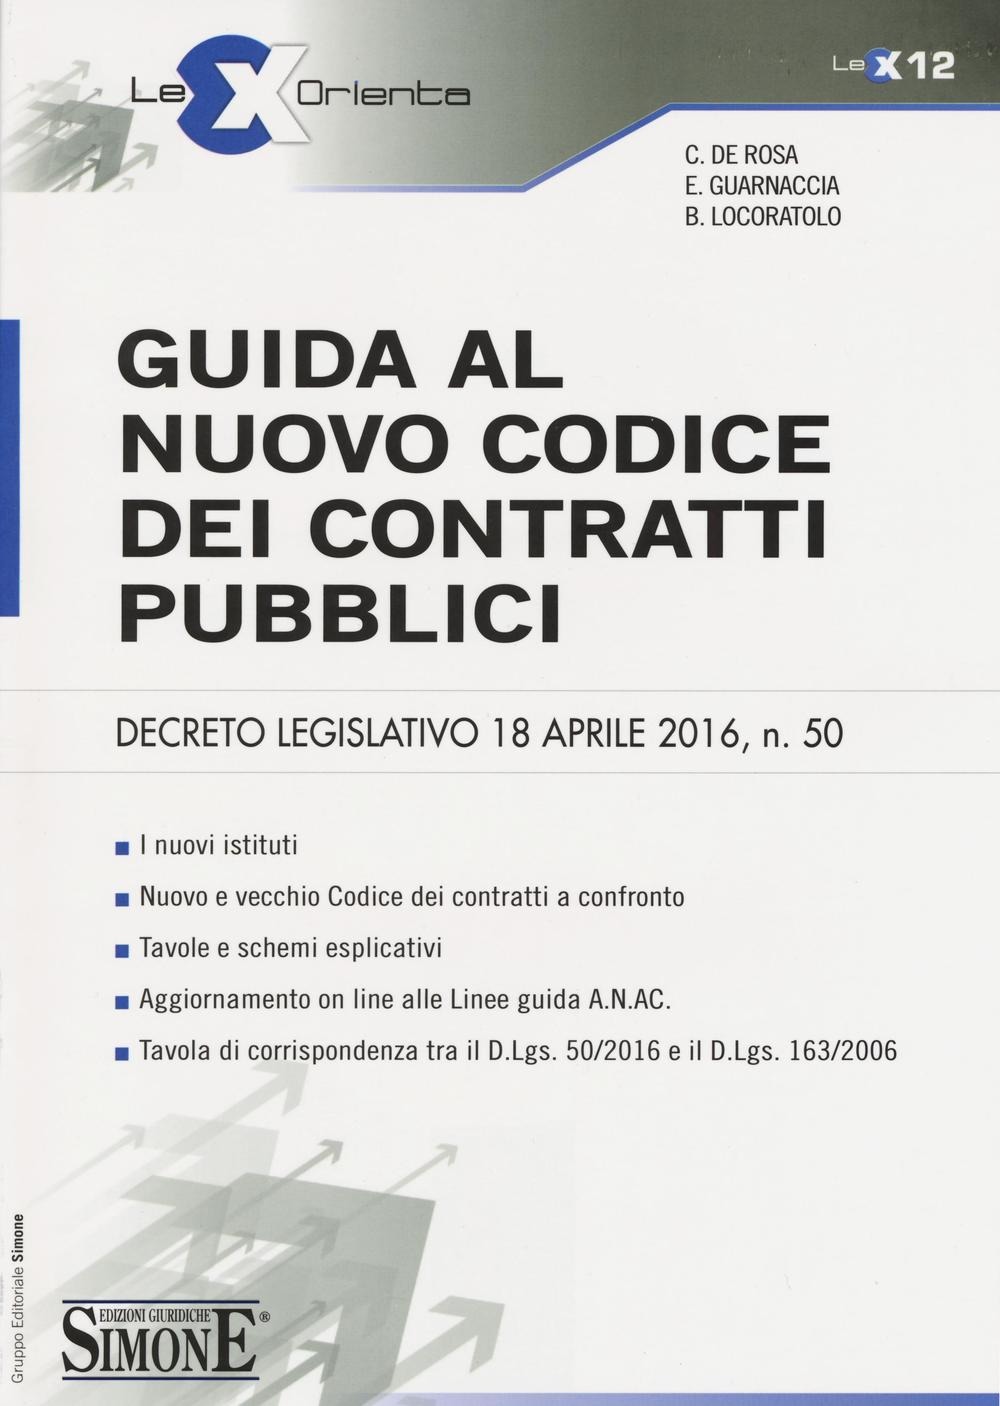 Guida al Nuovo Codice dei Contratti Pubblici - Lex12